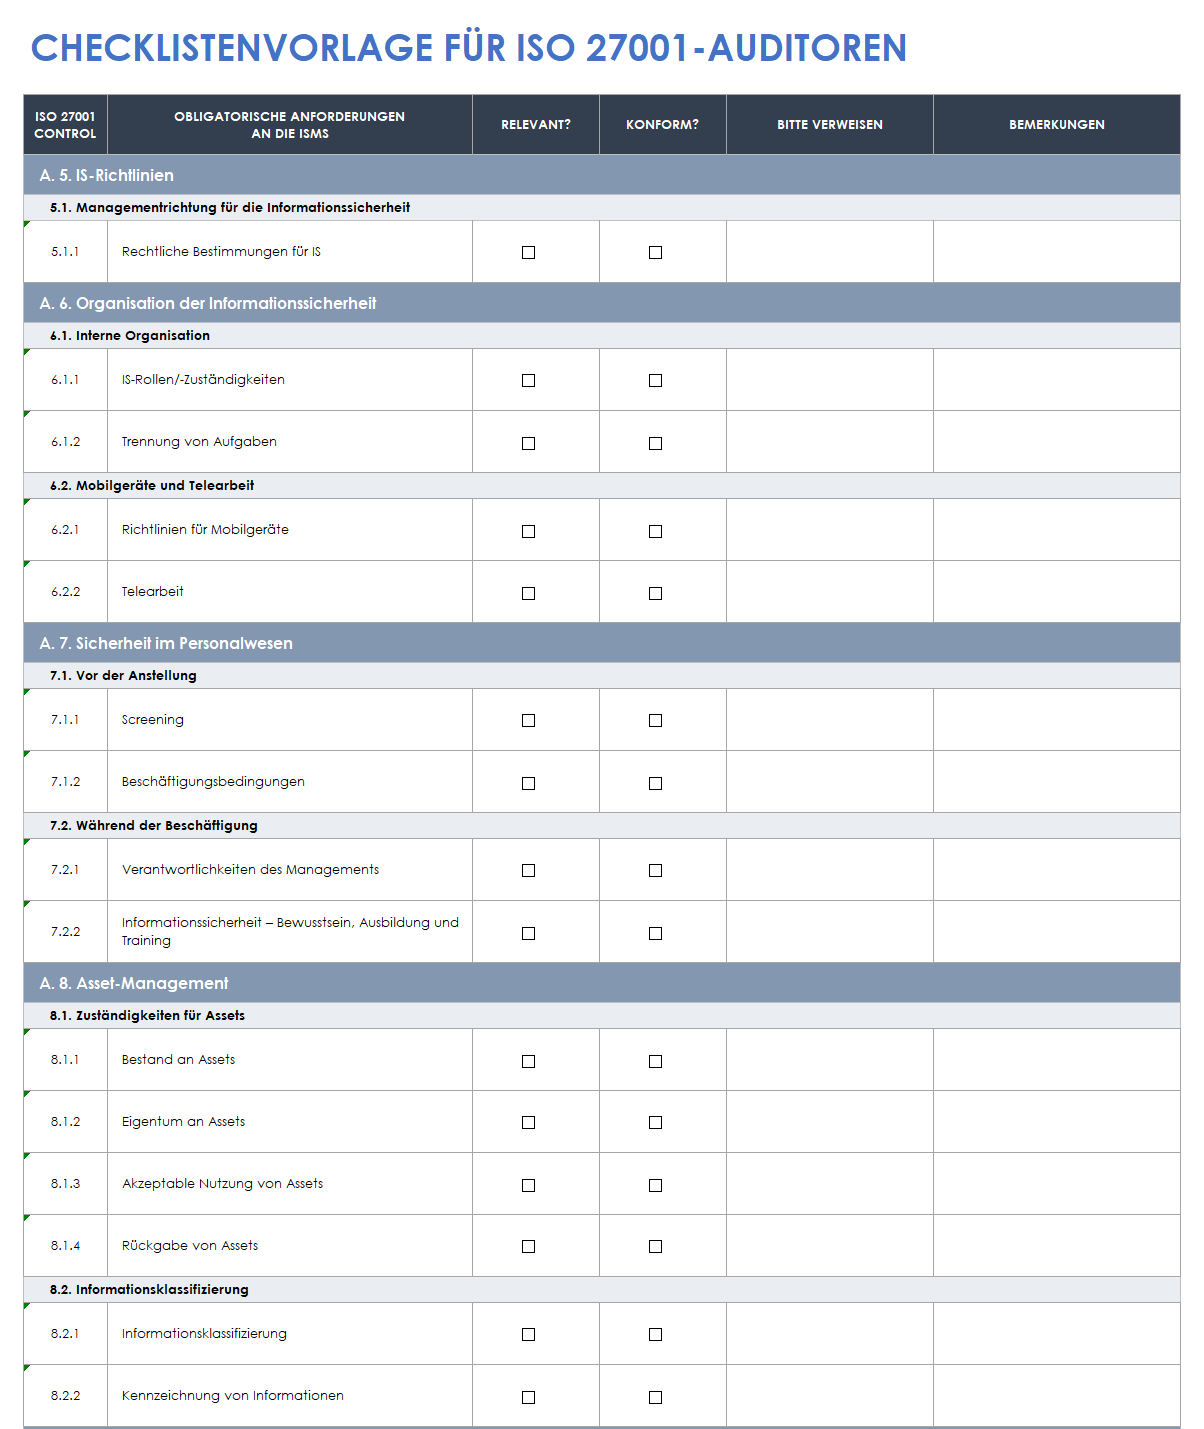  Vorlage für die ISO-27001-Auditor-Checkliste